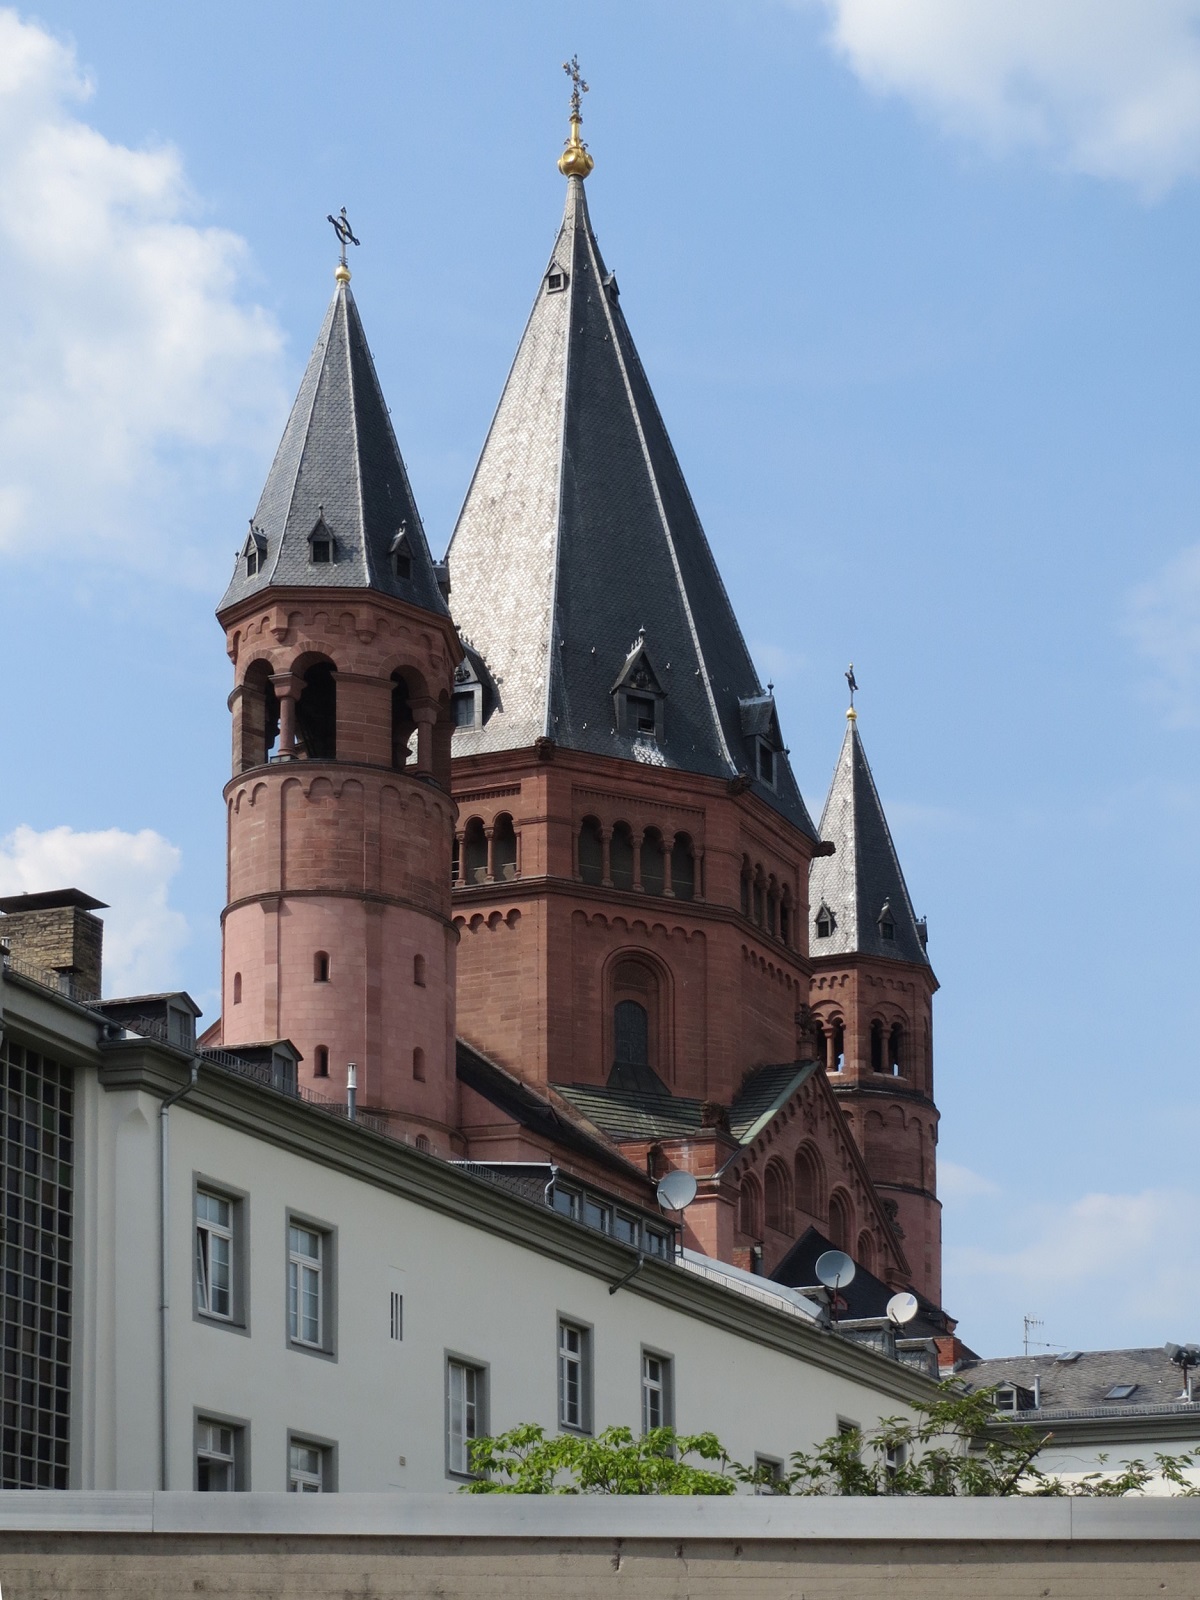 Mainzer Dom, Mainz